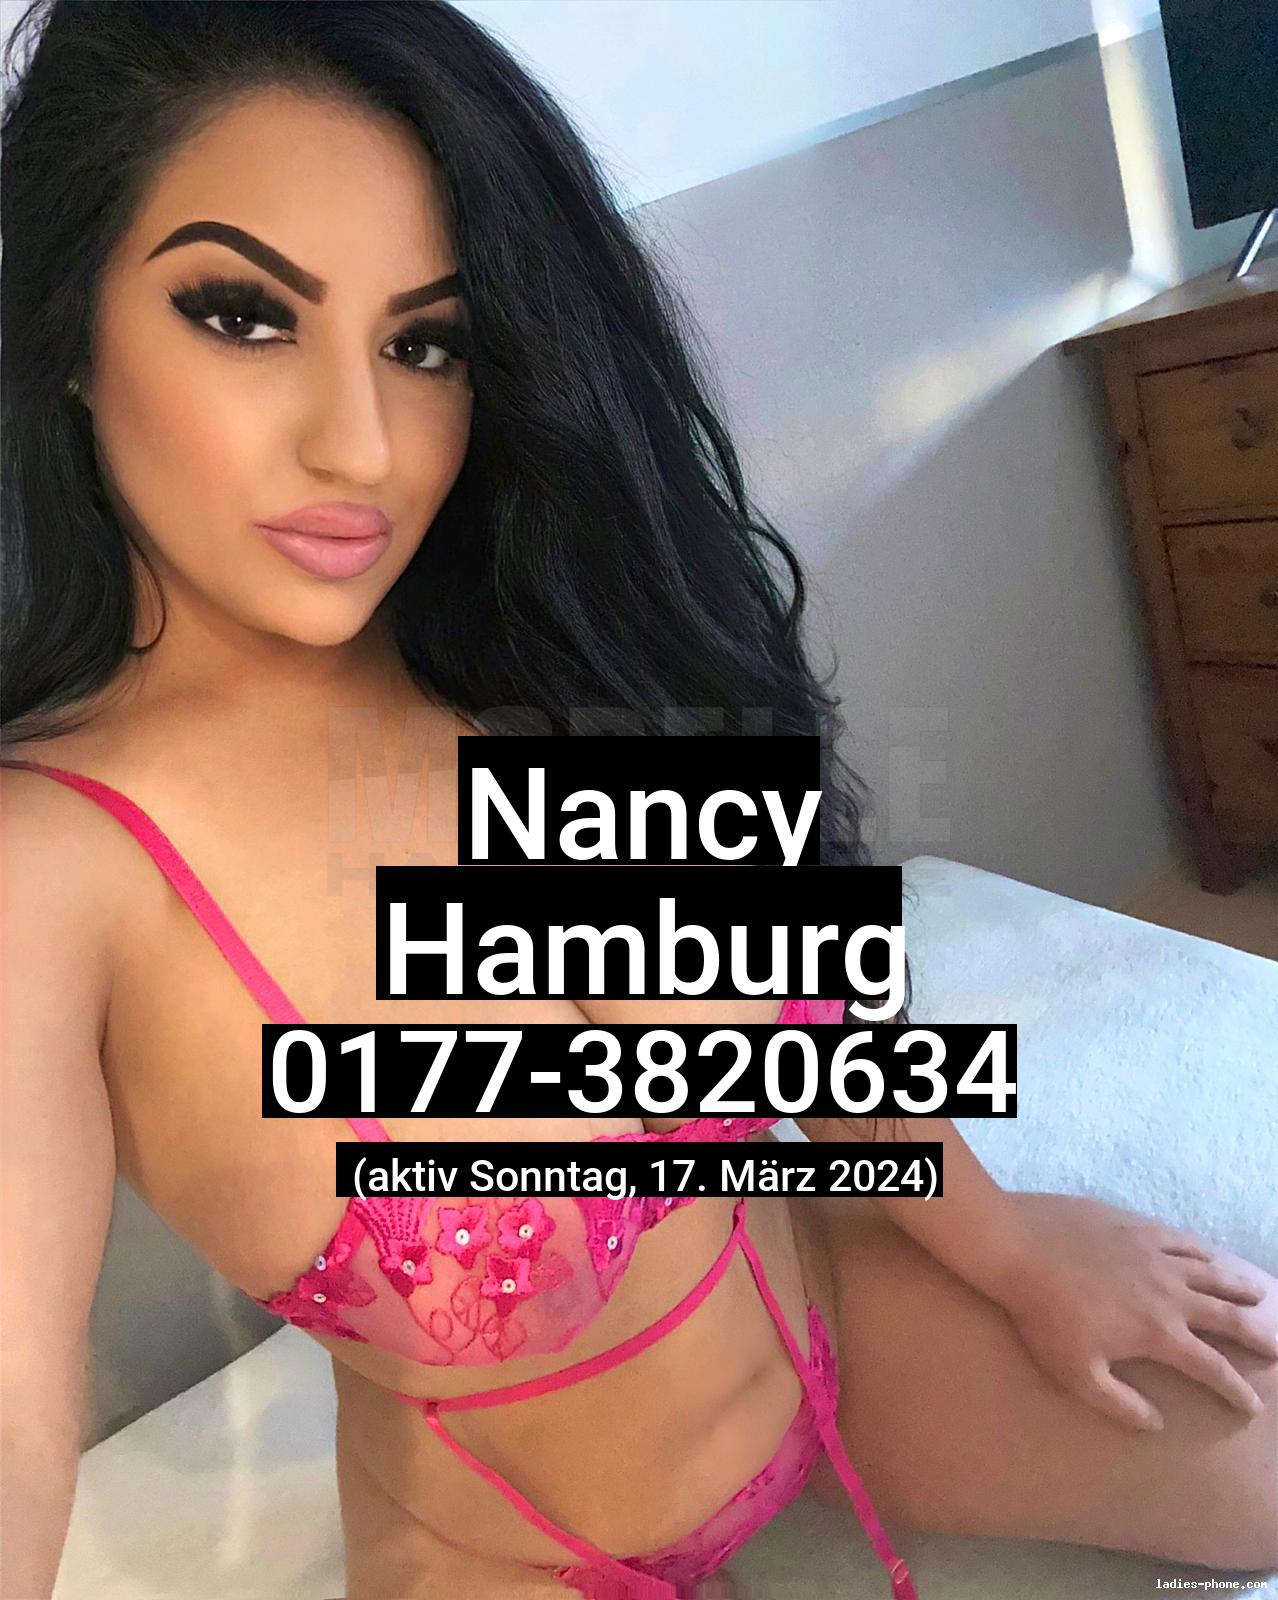 Nancy aus Hamburg